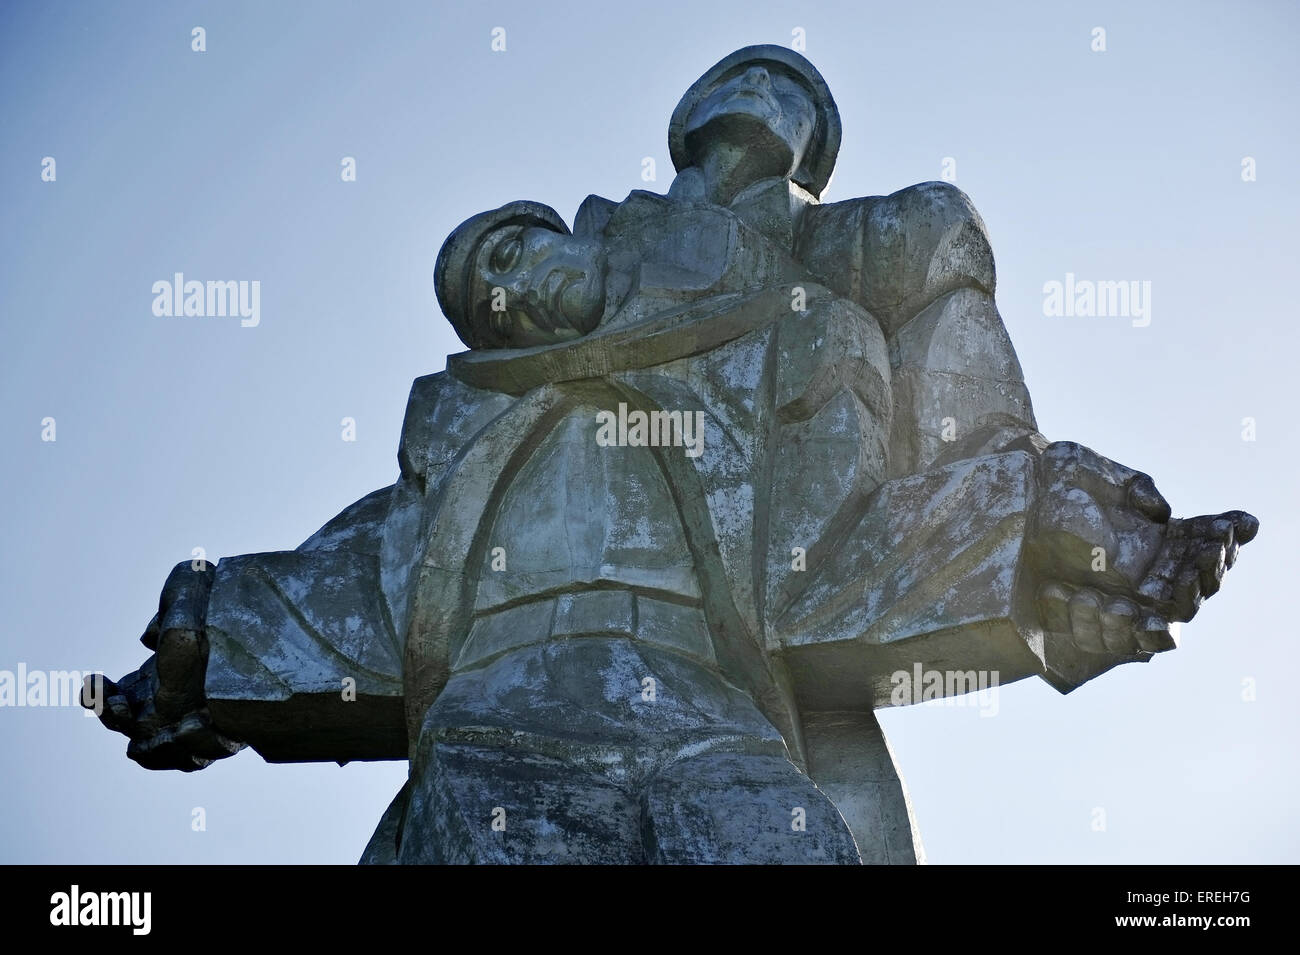 Soviético enorme estatua plateada de un soldado que sostiene un camarada moribundo que representa la Segunda Guerra Mundial Memorial en Dilijan, Armenia. Foto de stock